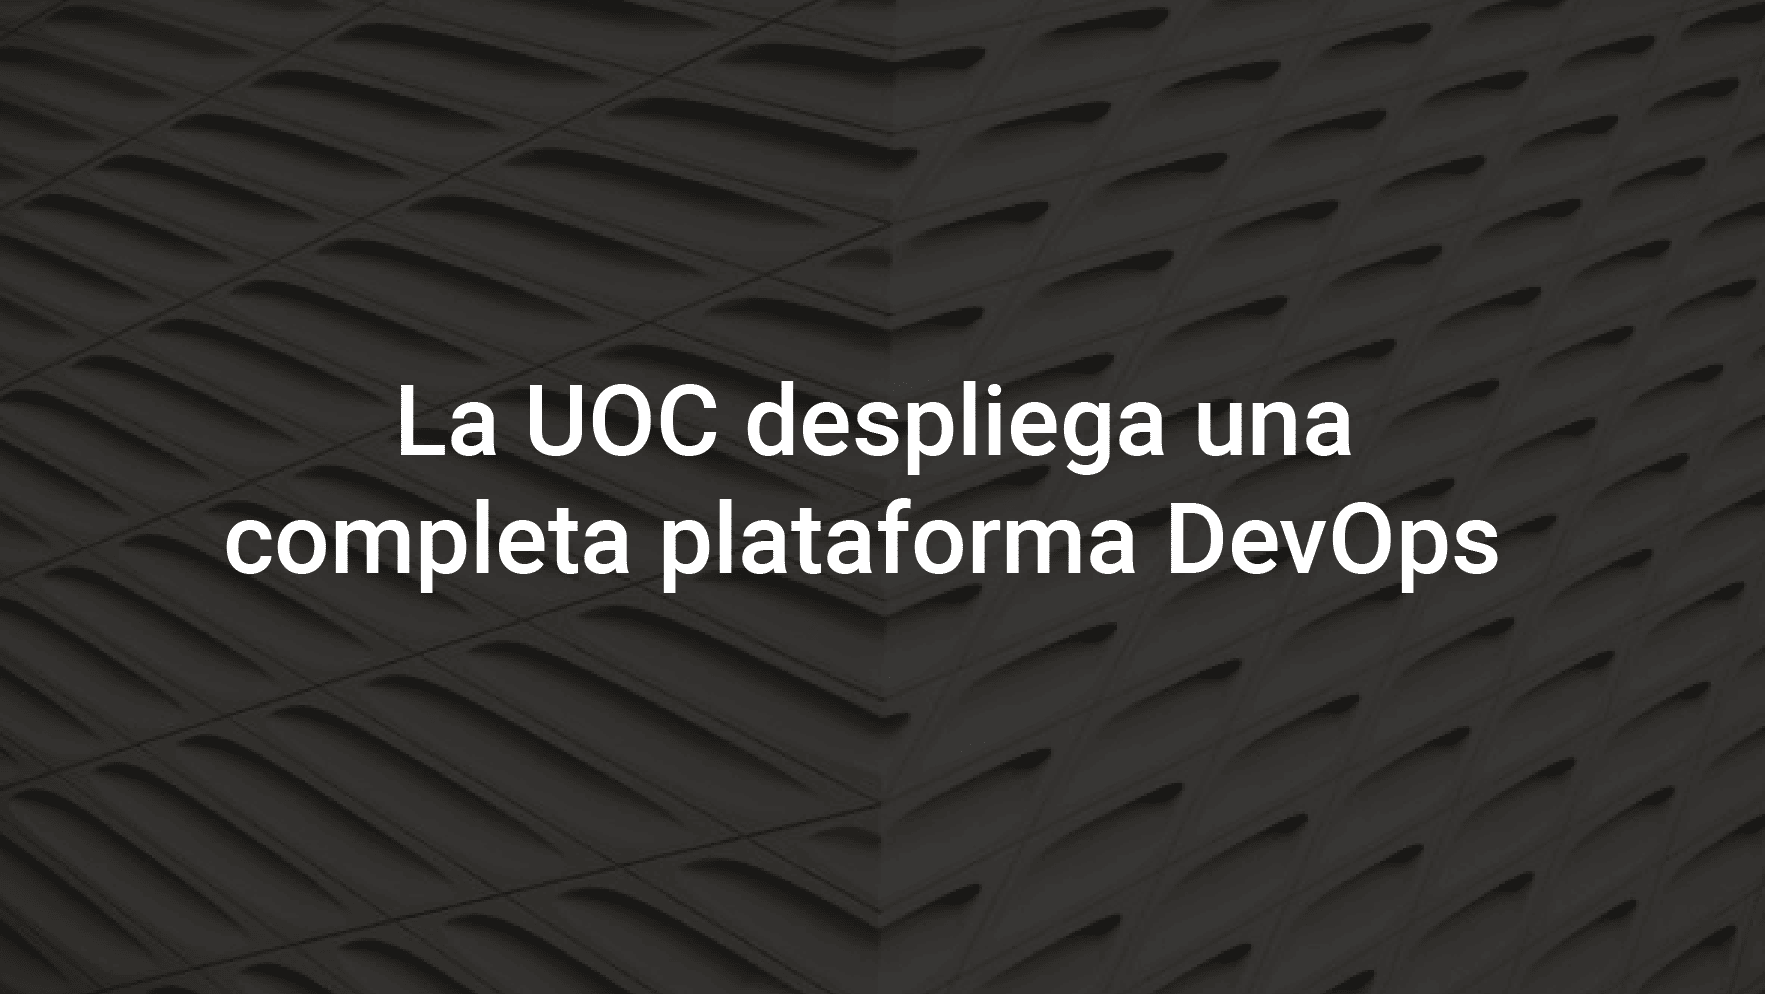 La UOC despliega una completa plataforma DevOps para aplicaciones basadas en microservicios sobre contenedores